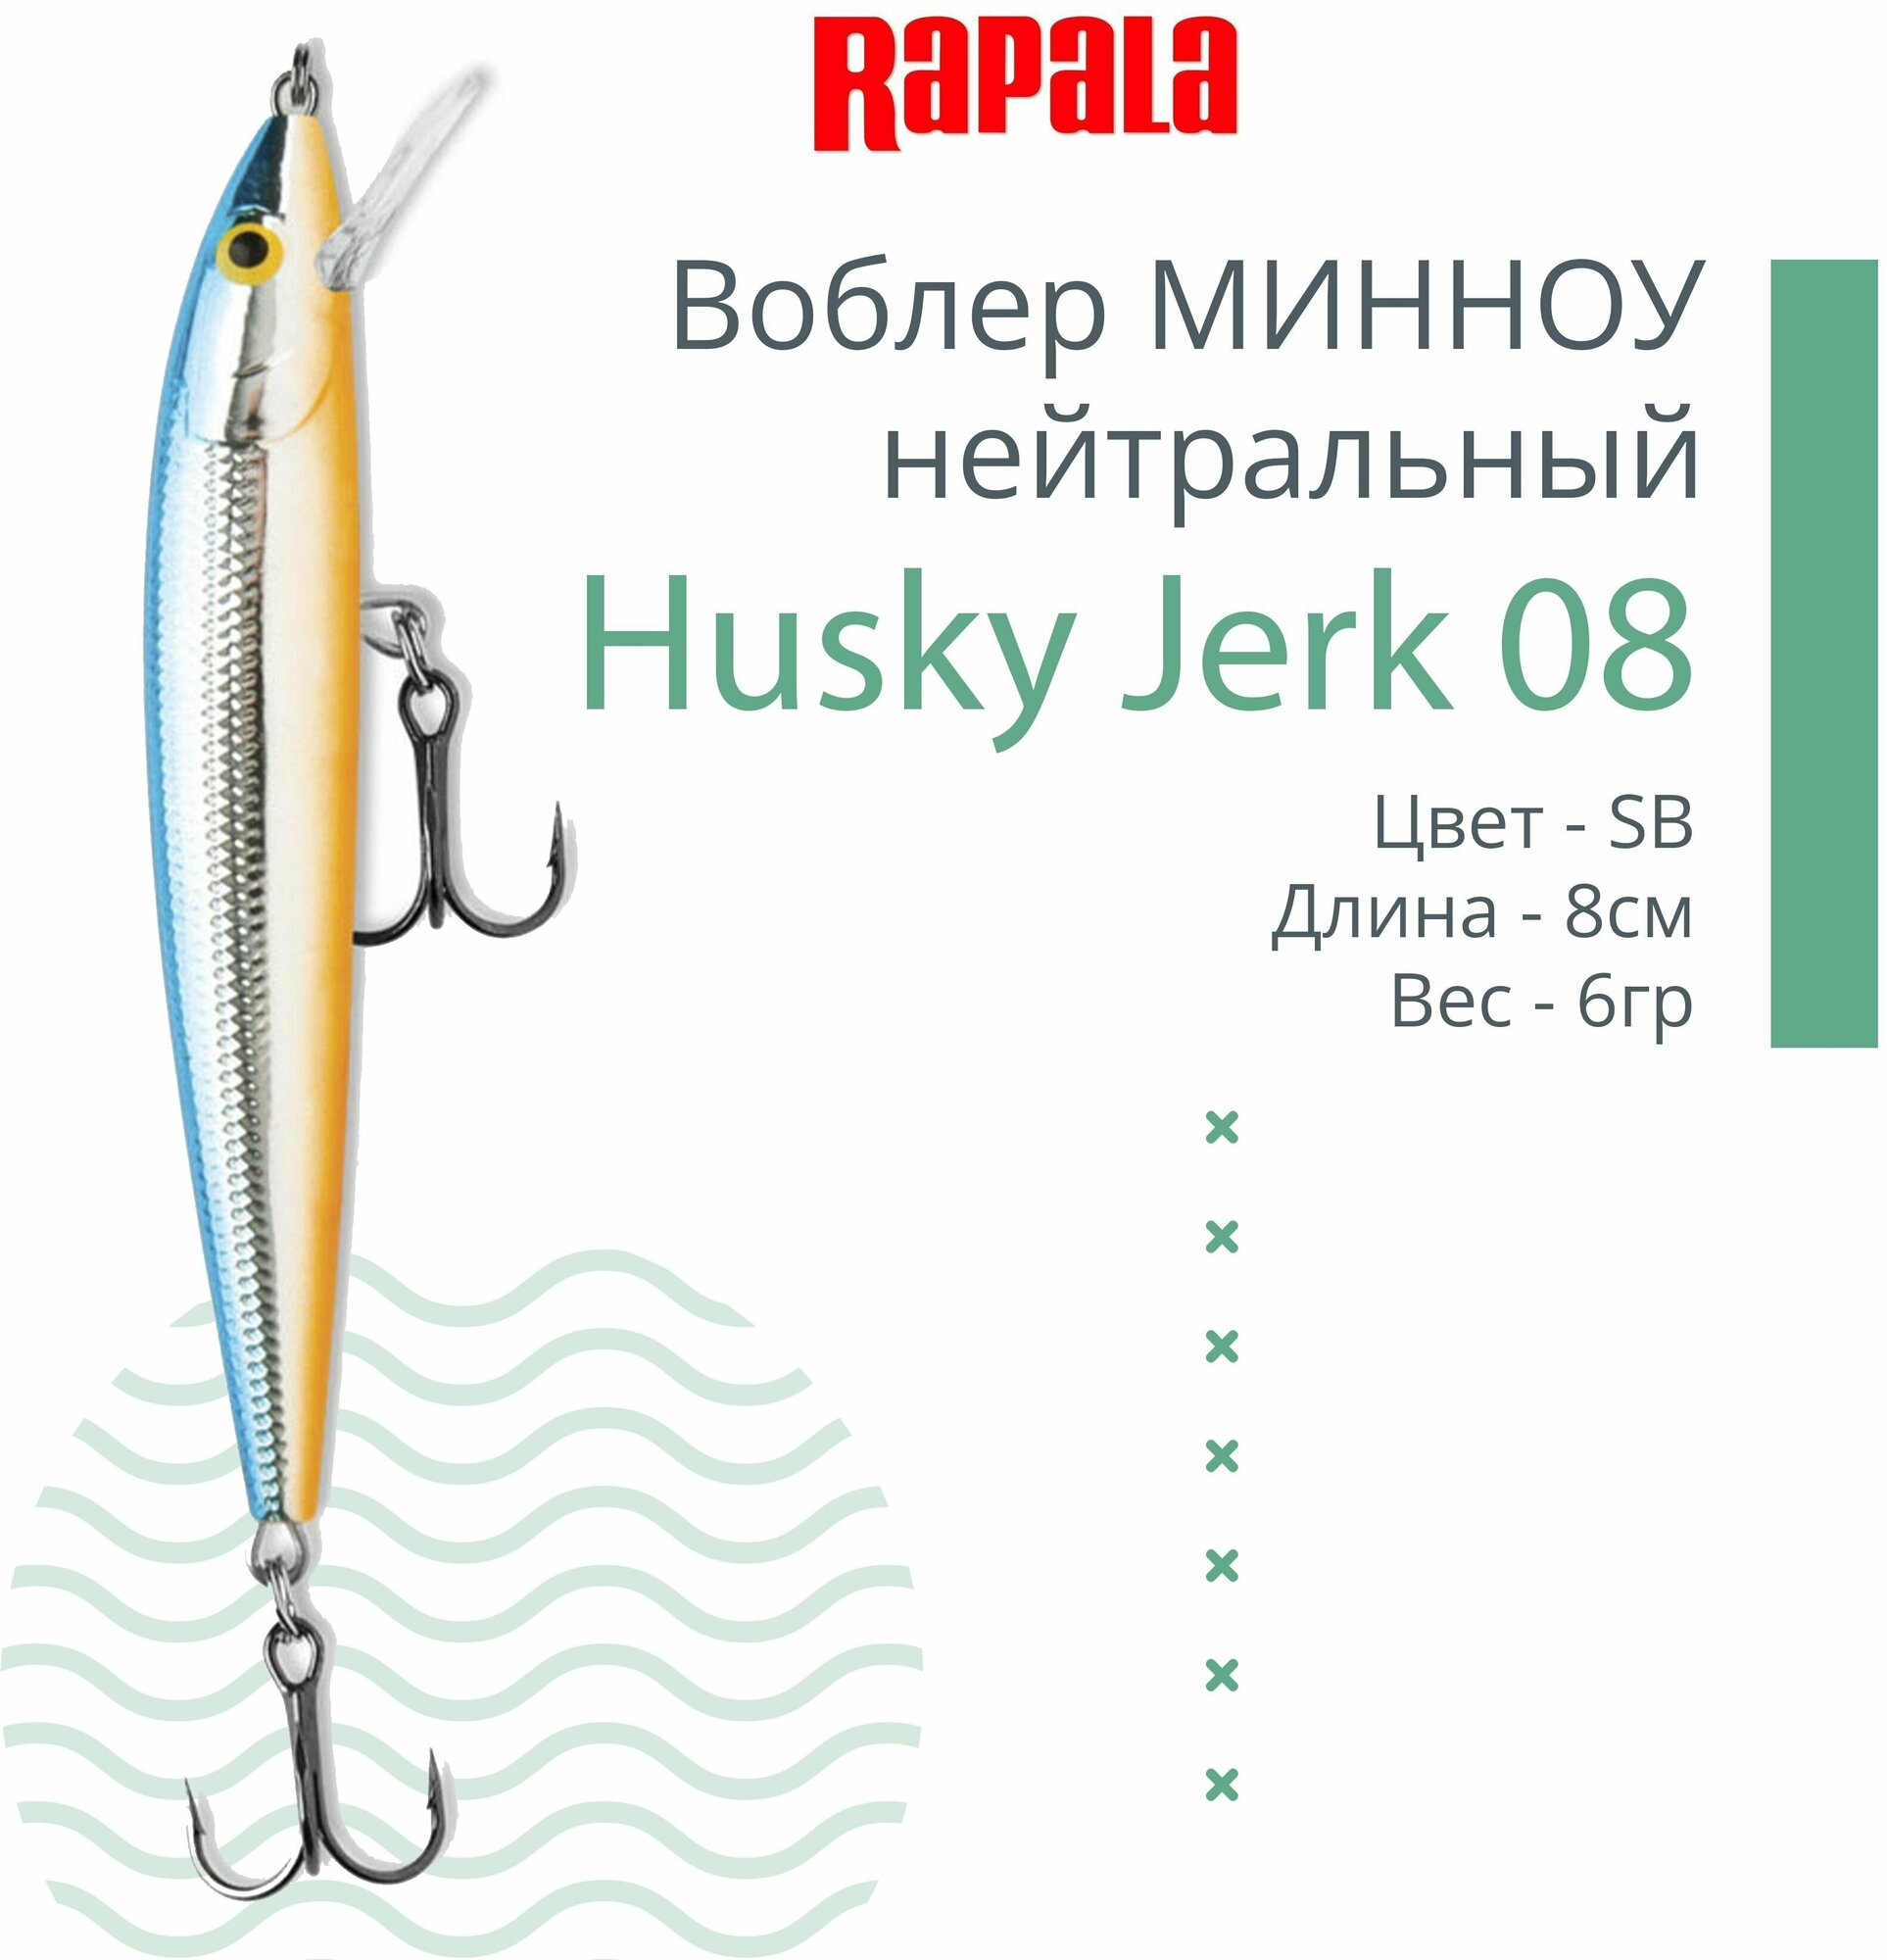 Воблер для рыбалки RAPALA Husky Jerk 08, 8см, 6гр, цвет SB, нейтральный